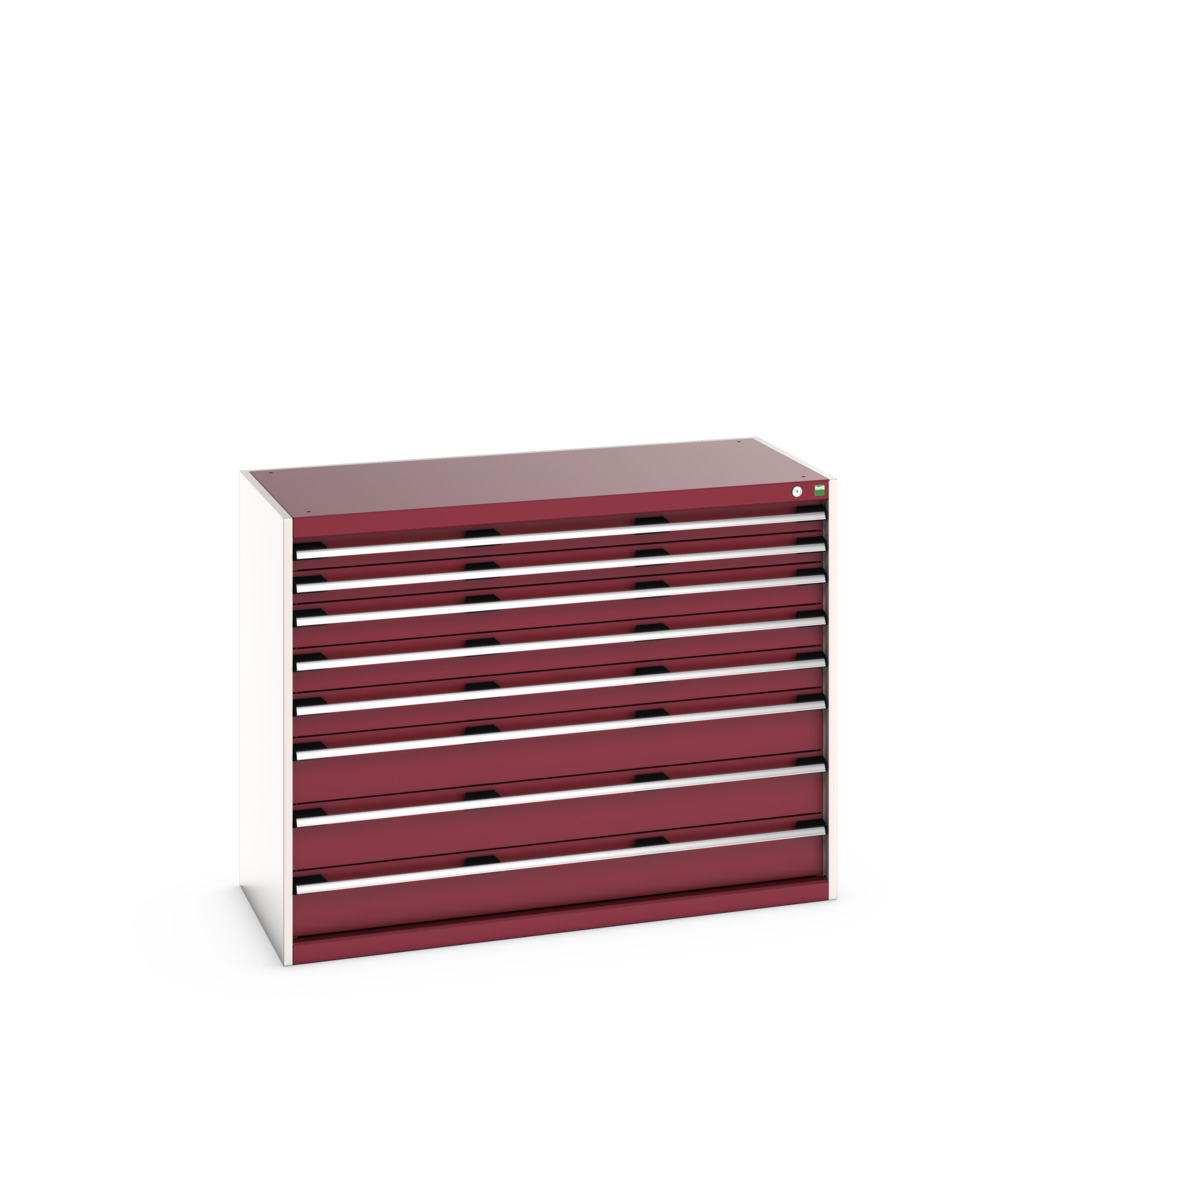 40022153.24V - cubio drawer cabinet